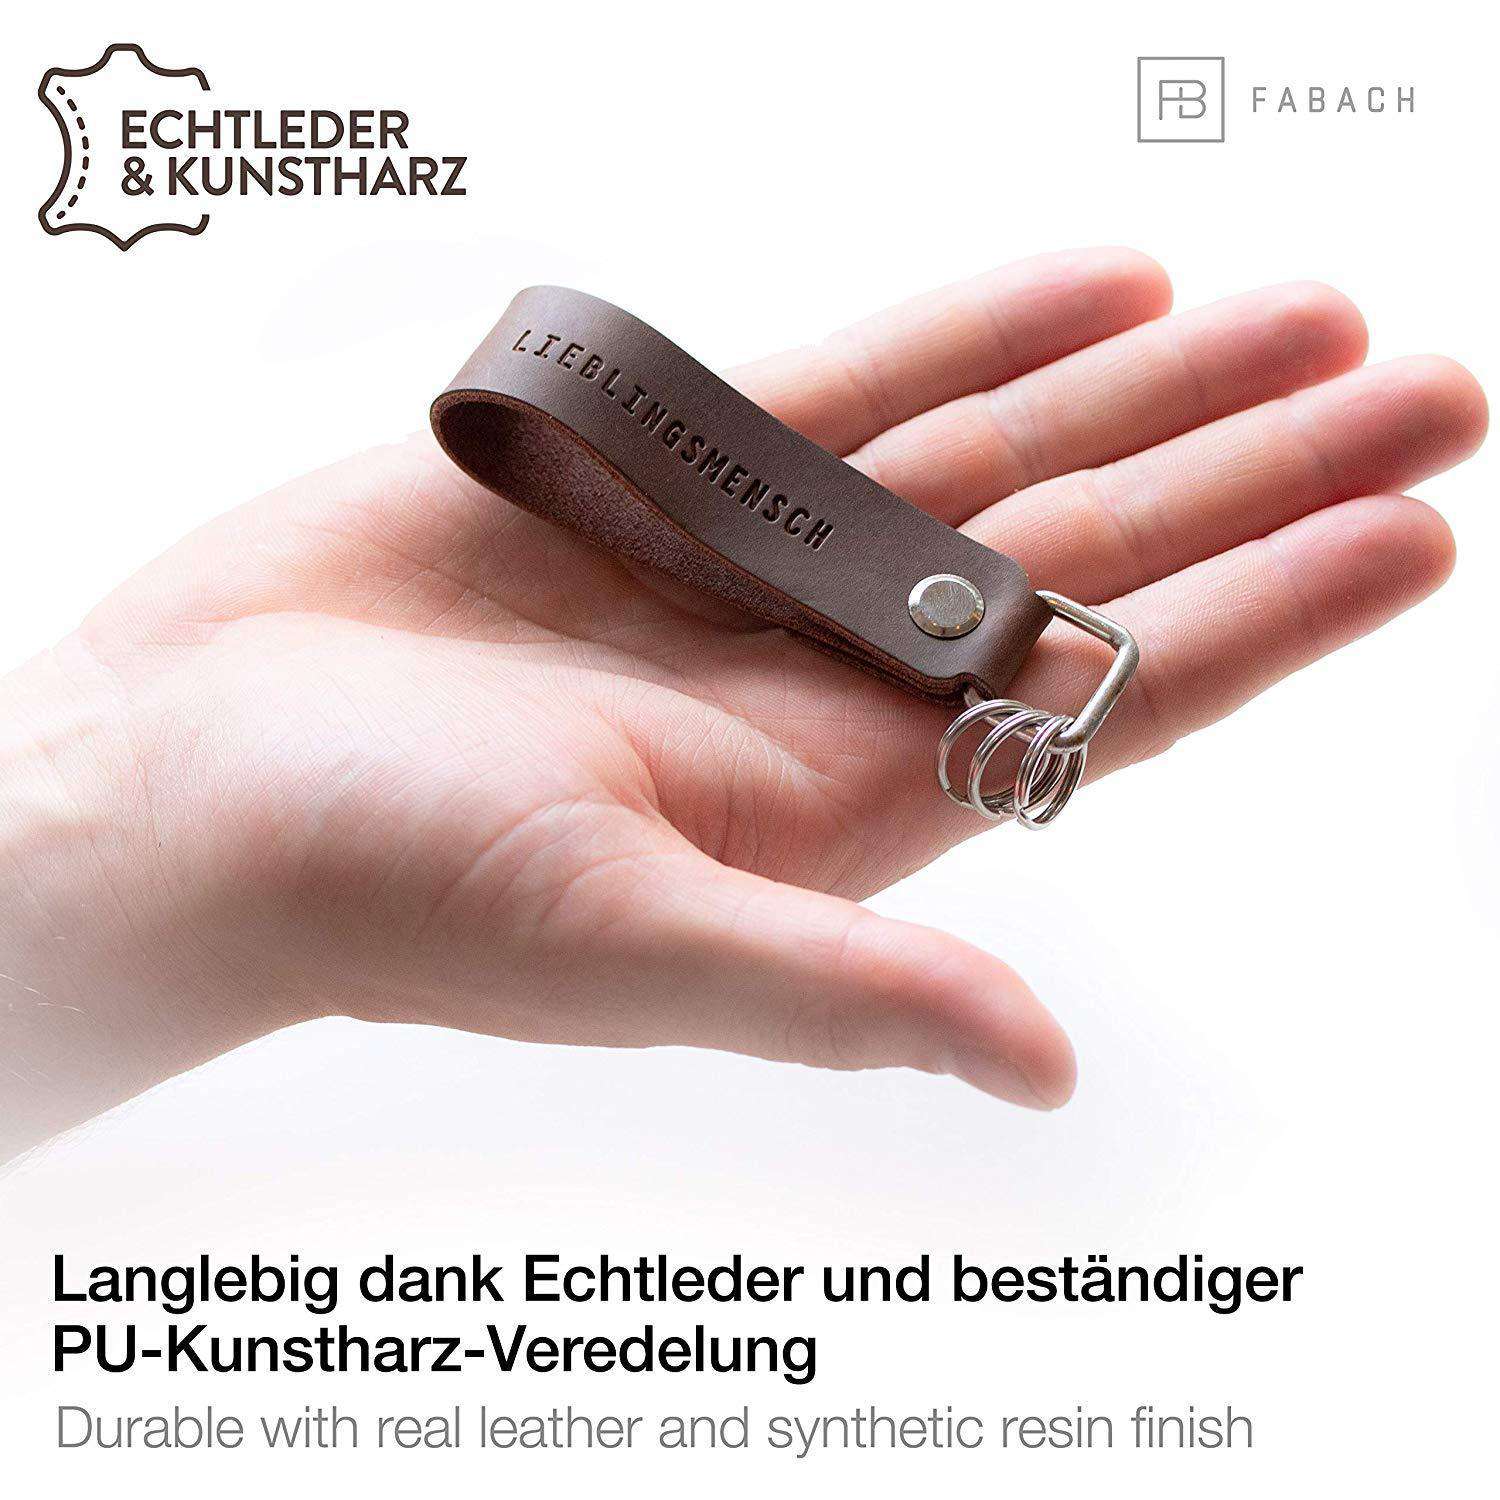 "Lieblingsmensch" Leder-Schlüsselanhänger mit wechselbarem Schlüsselring